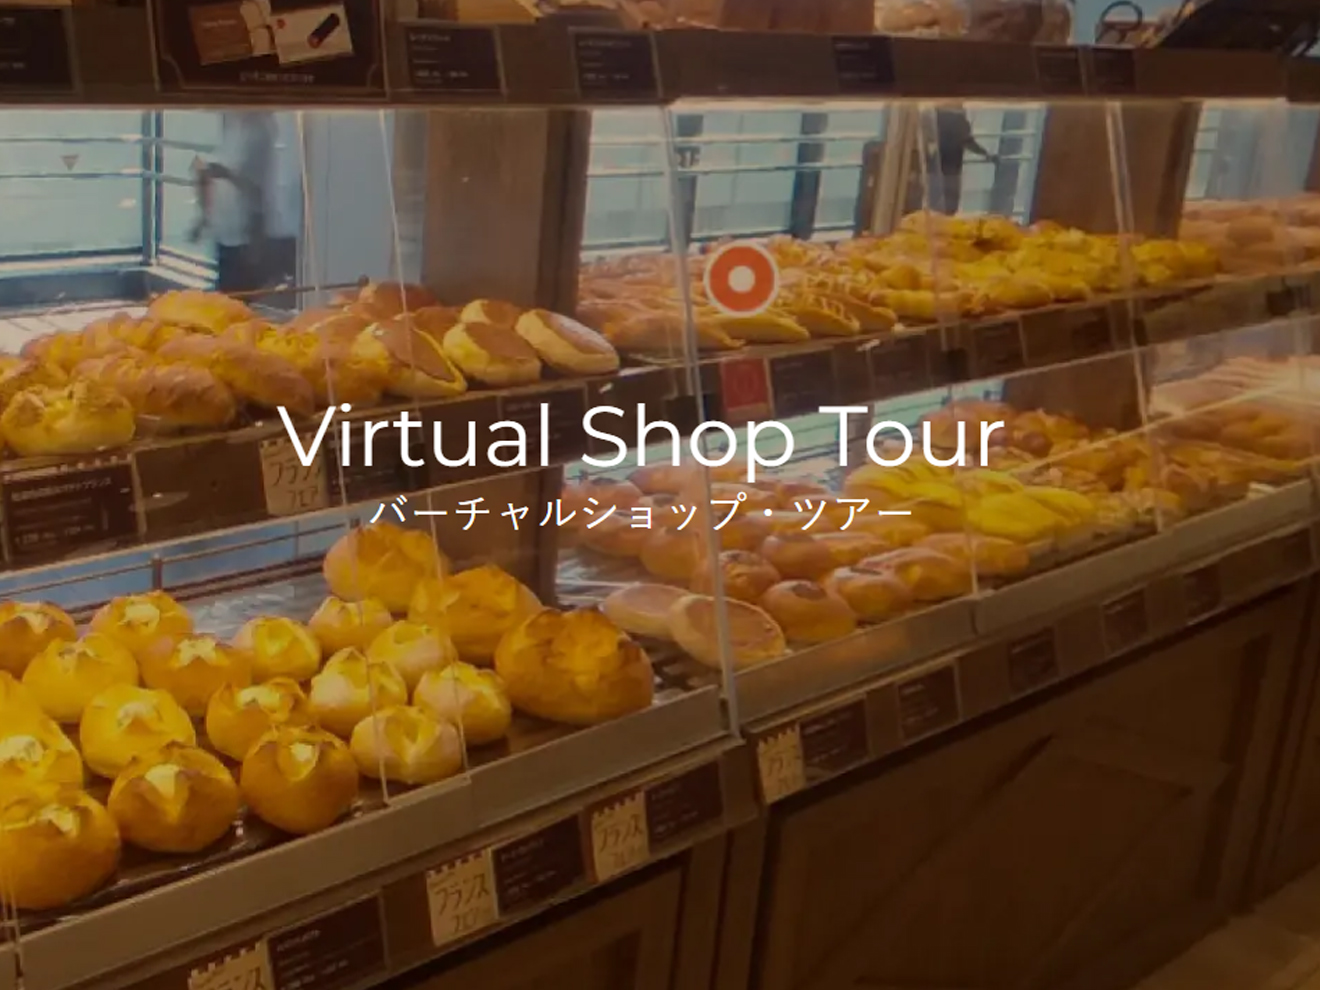 「Virtual Shop Tour」ページ開設のお知らせ